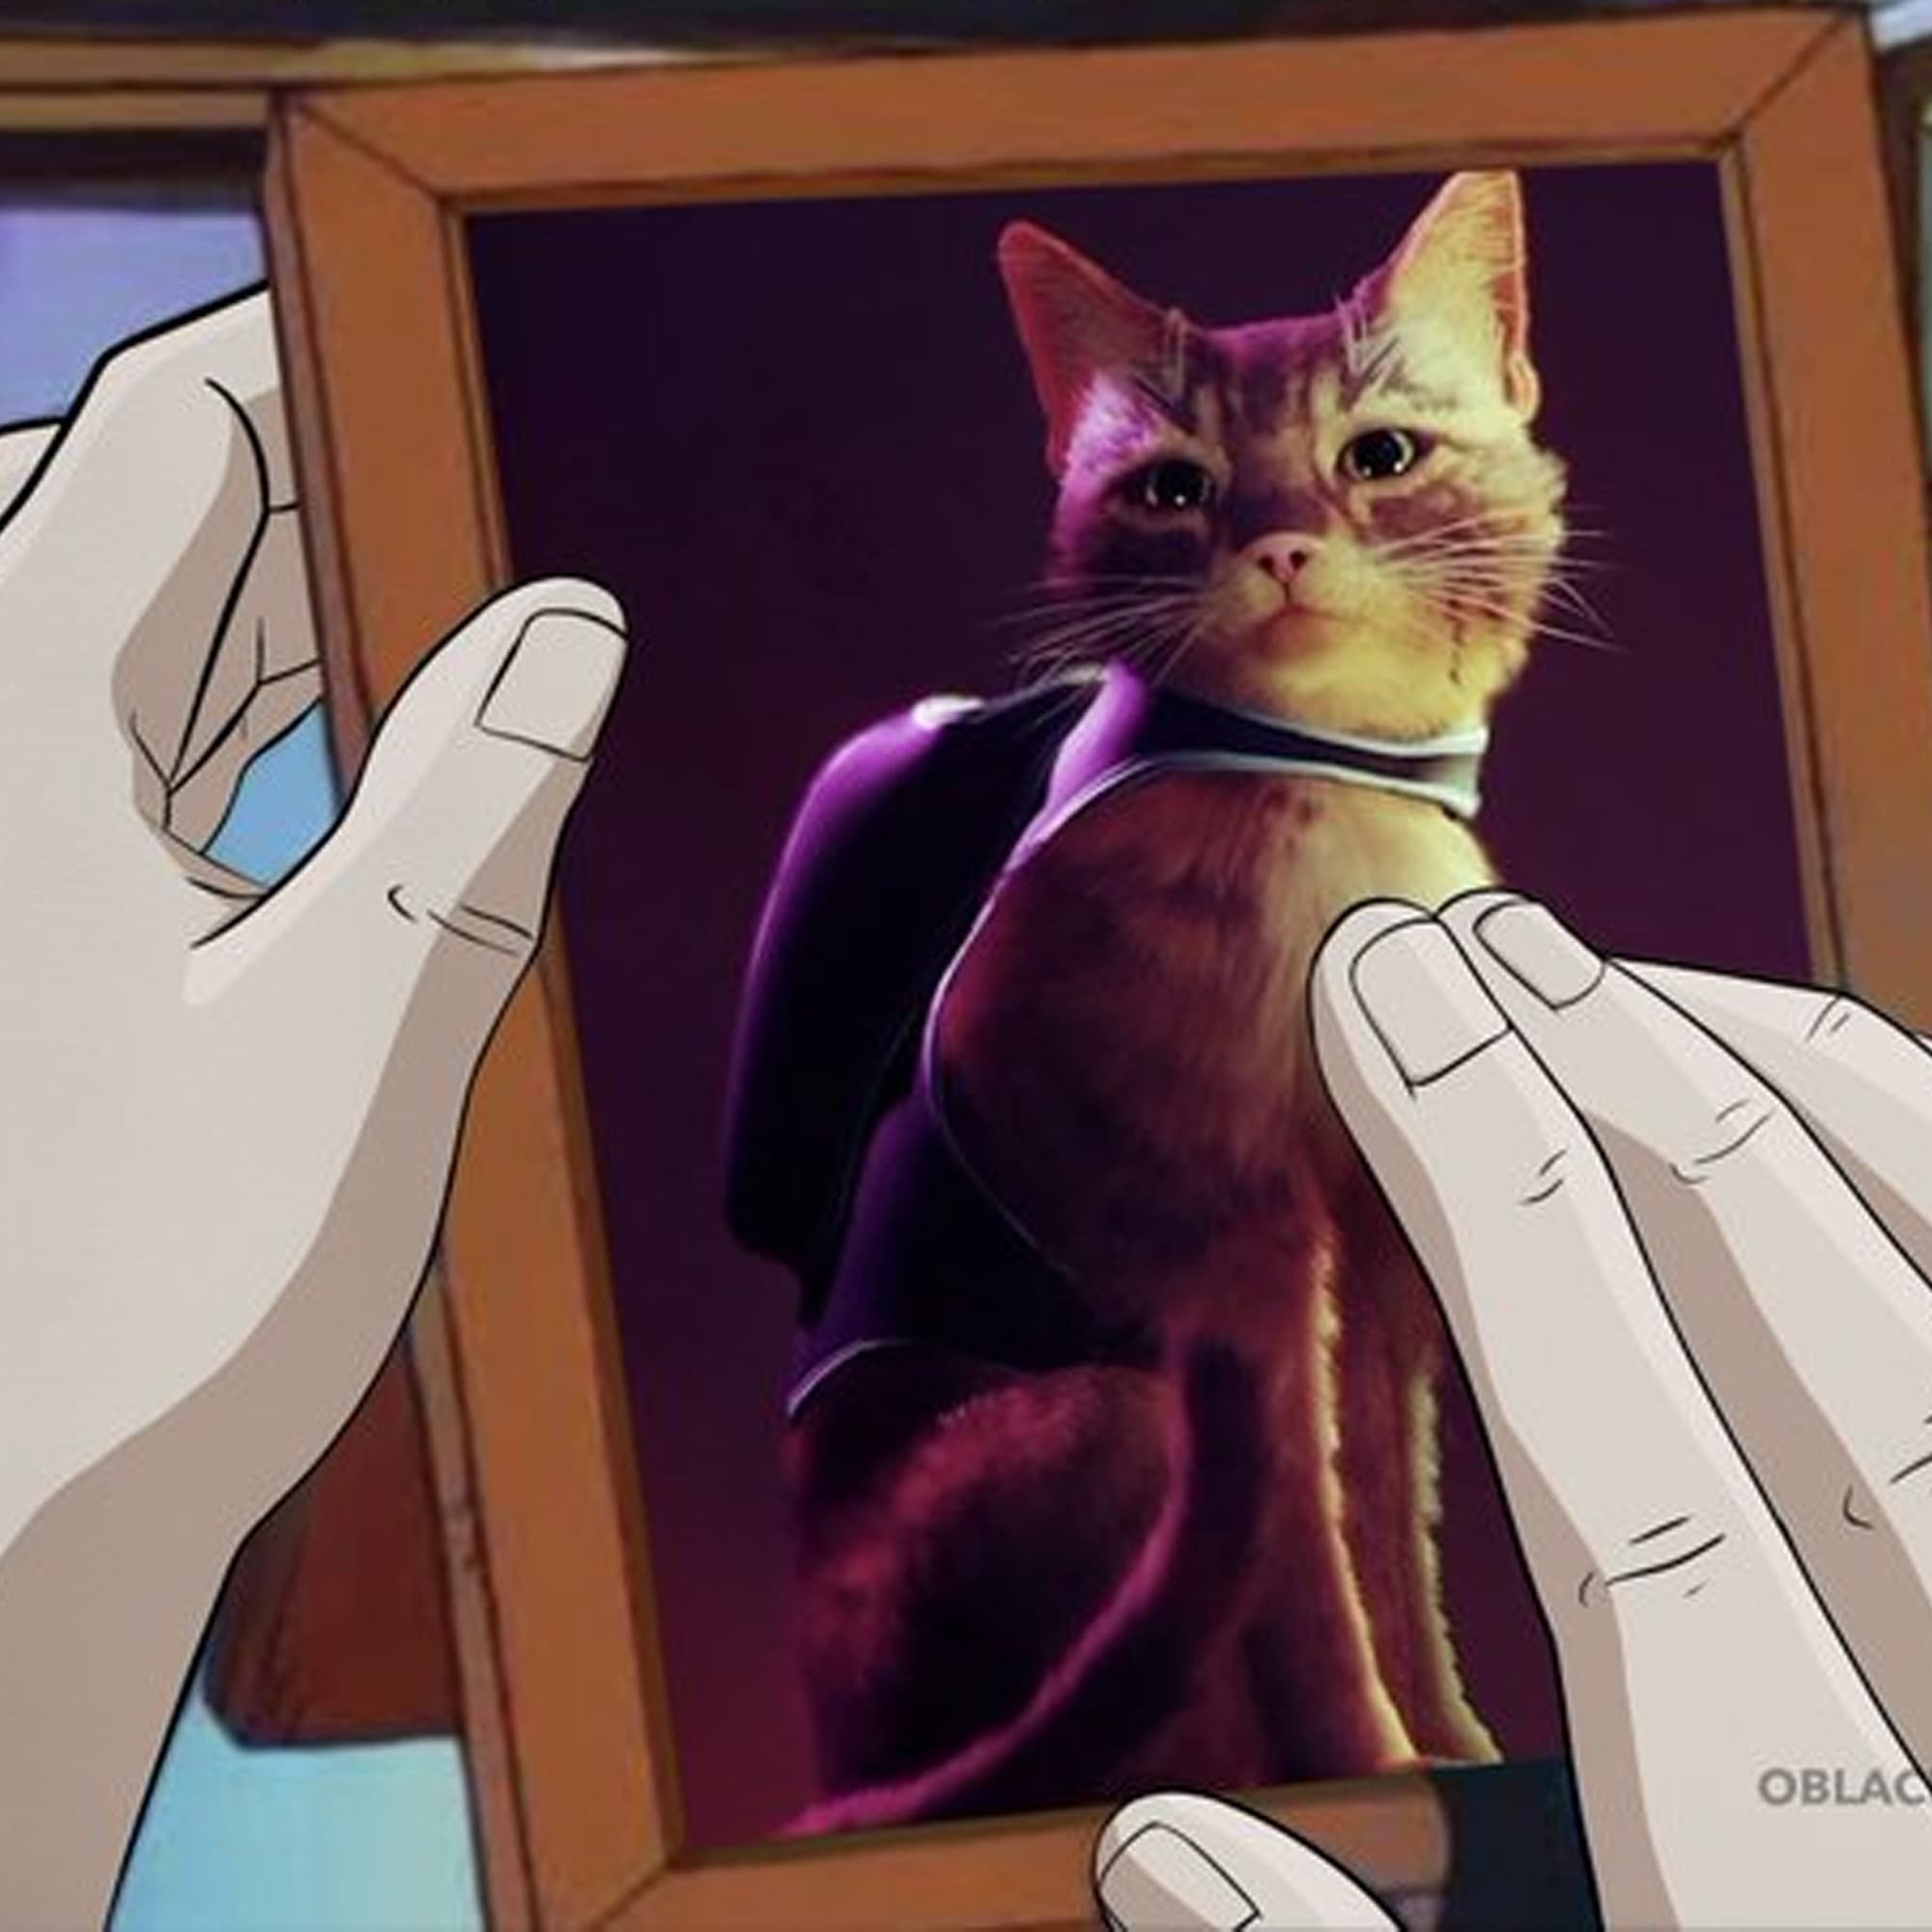 Stray, o jogo do gato, é lançado e internet reage com memes